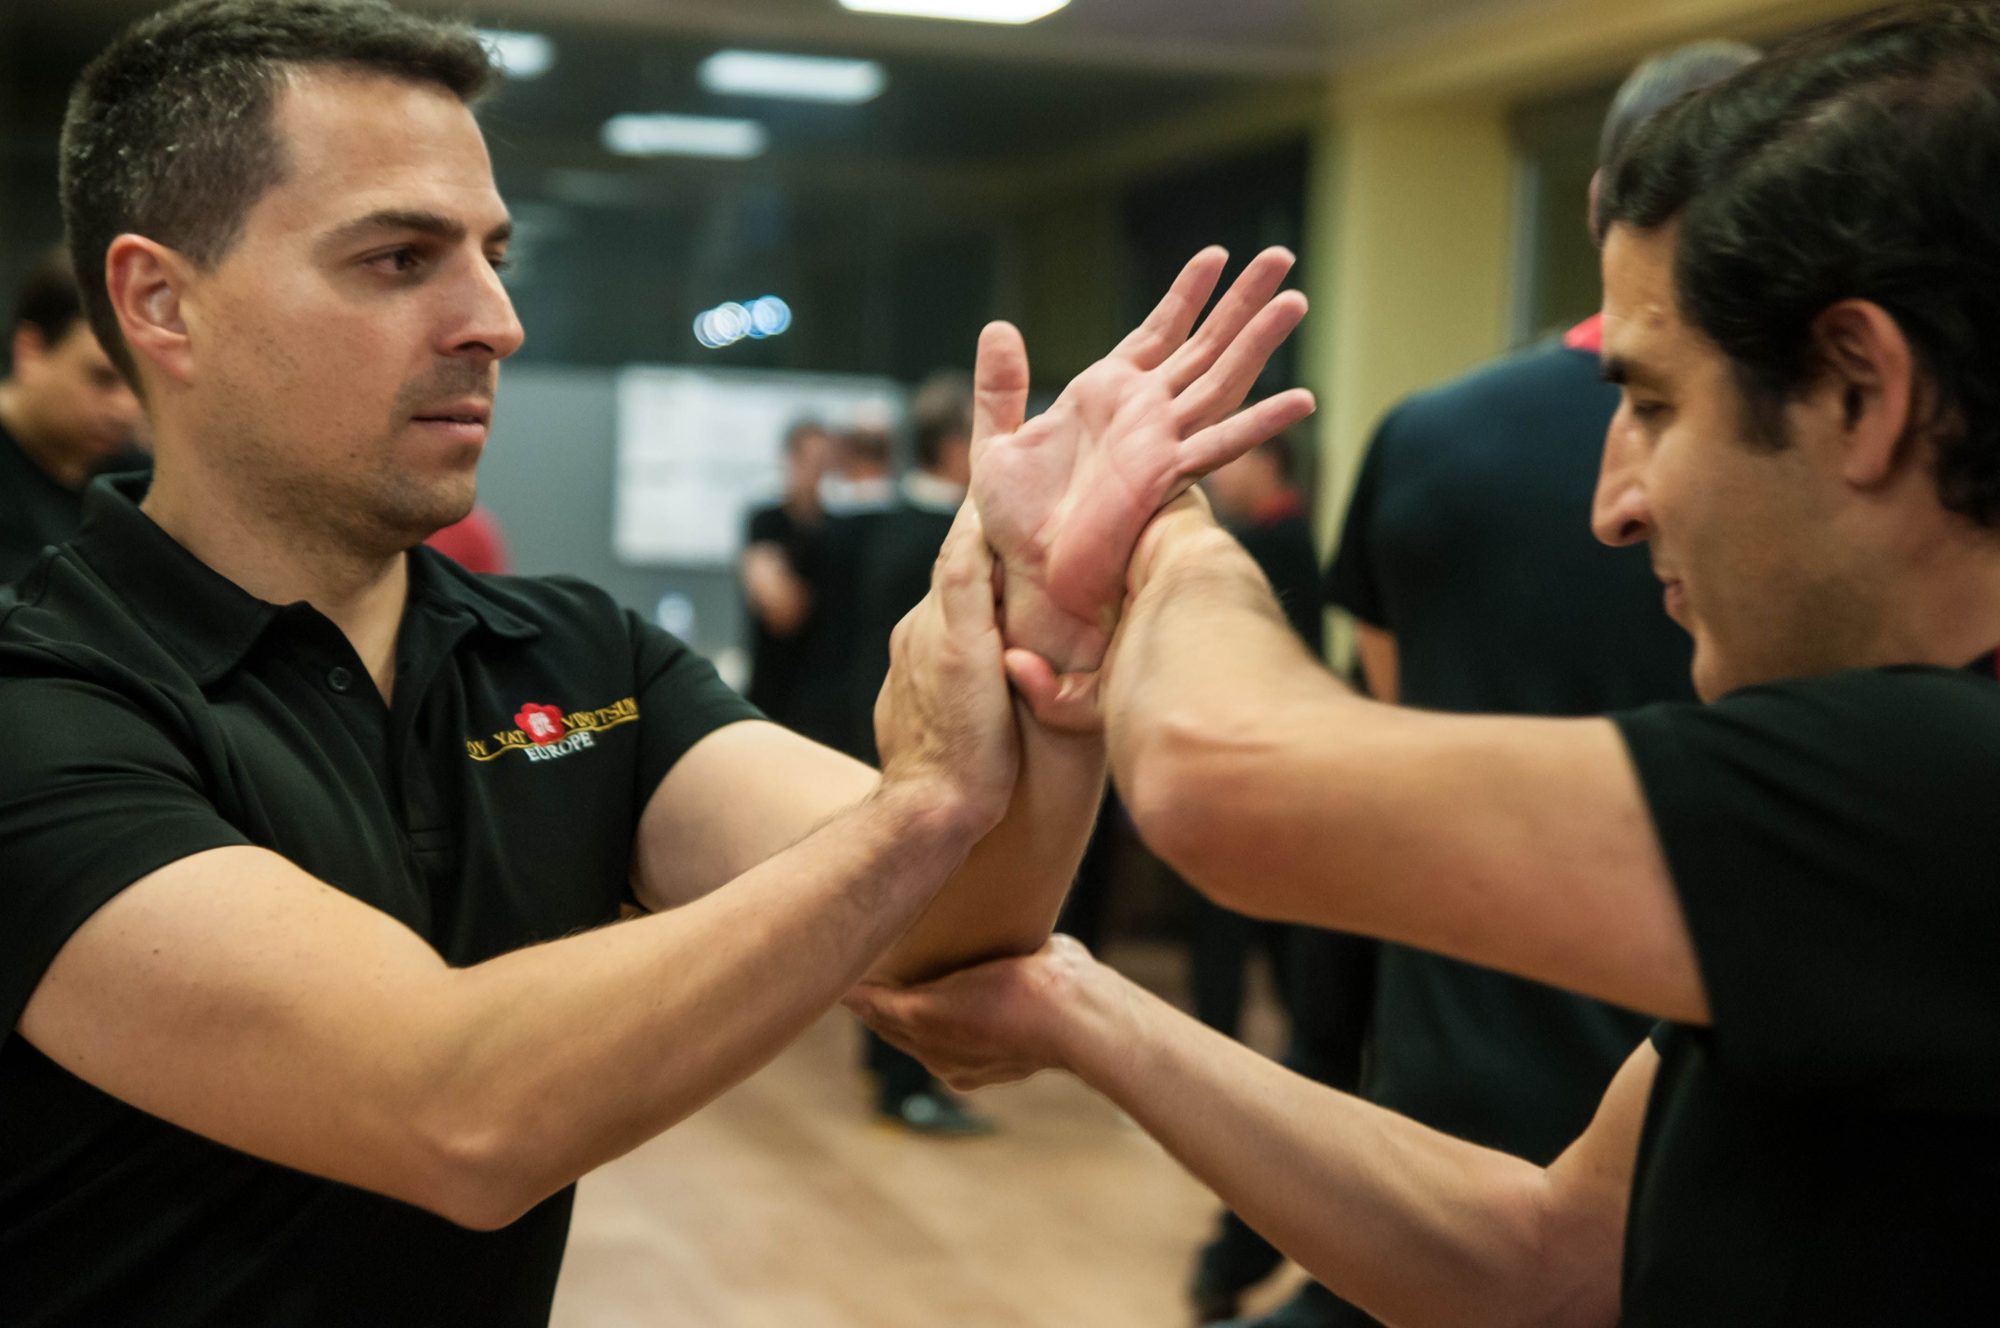 Escuela de Wing Chun. Aprender de manera rápida y fácil el Sistema completo de Wing Chun Kung Fu. En la escuela del Maestro Marcelo Navarro.